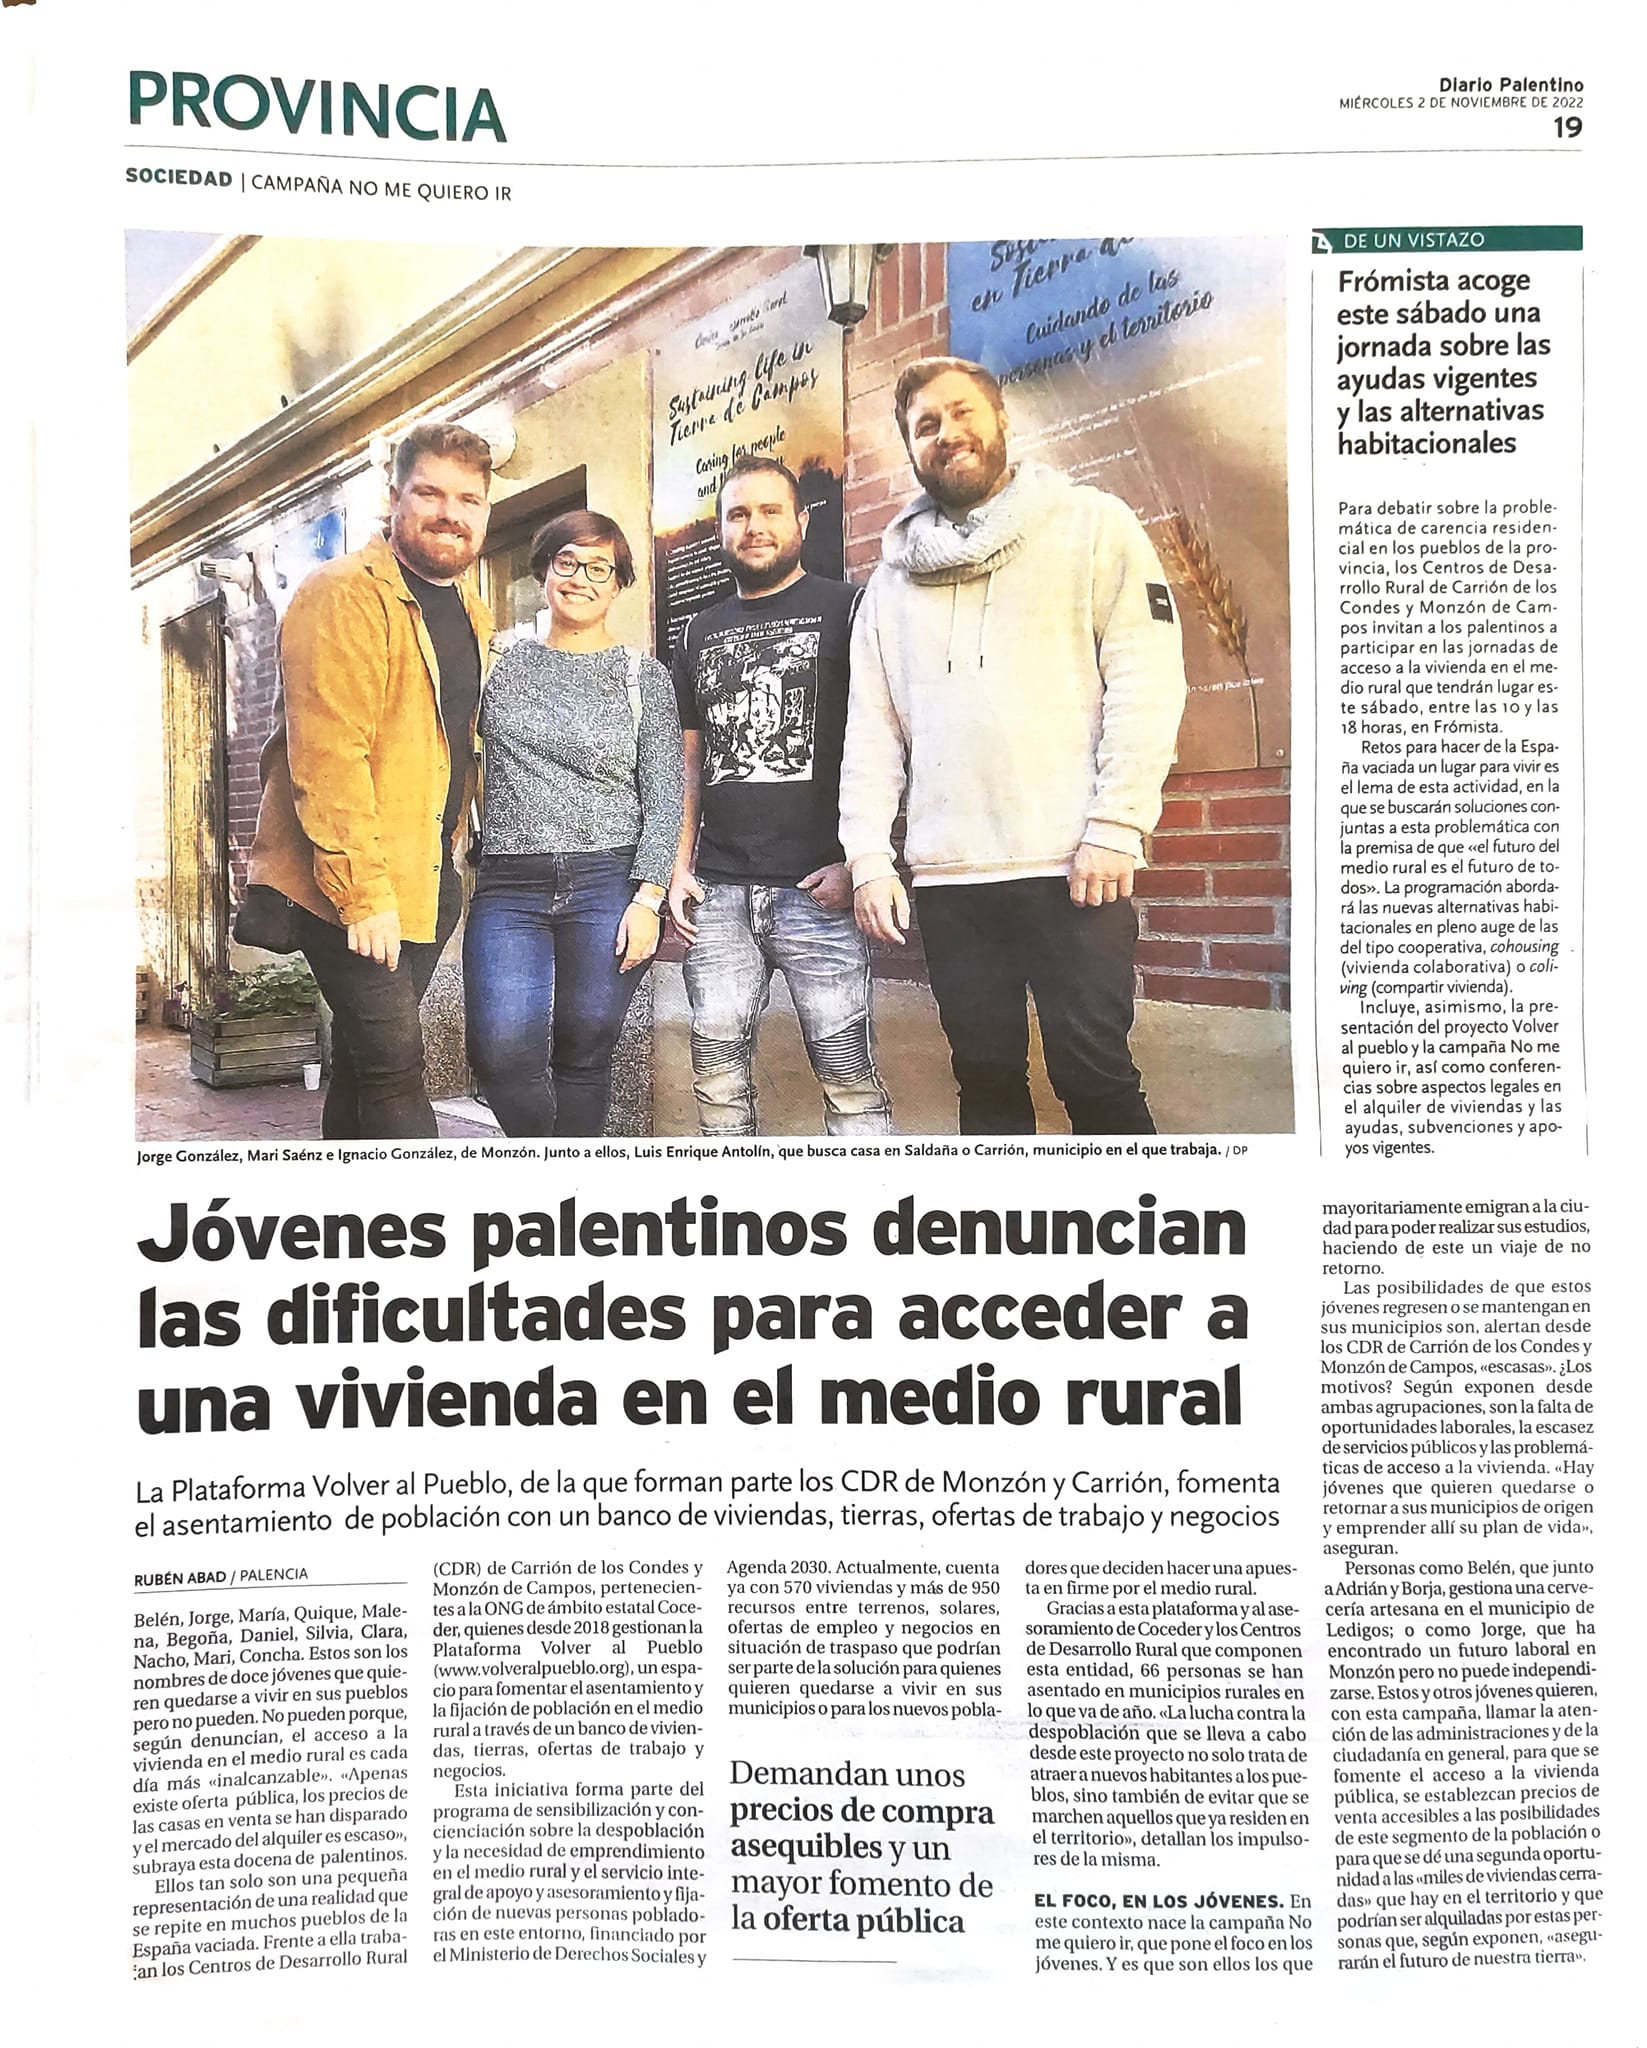 Página del periódico del diario Palentino con la foto de cuatro jóvenes